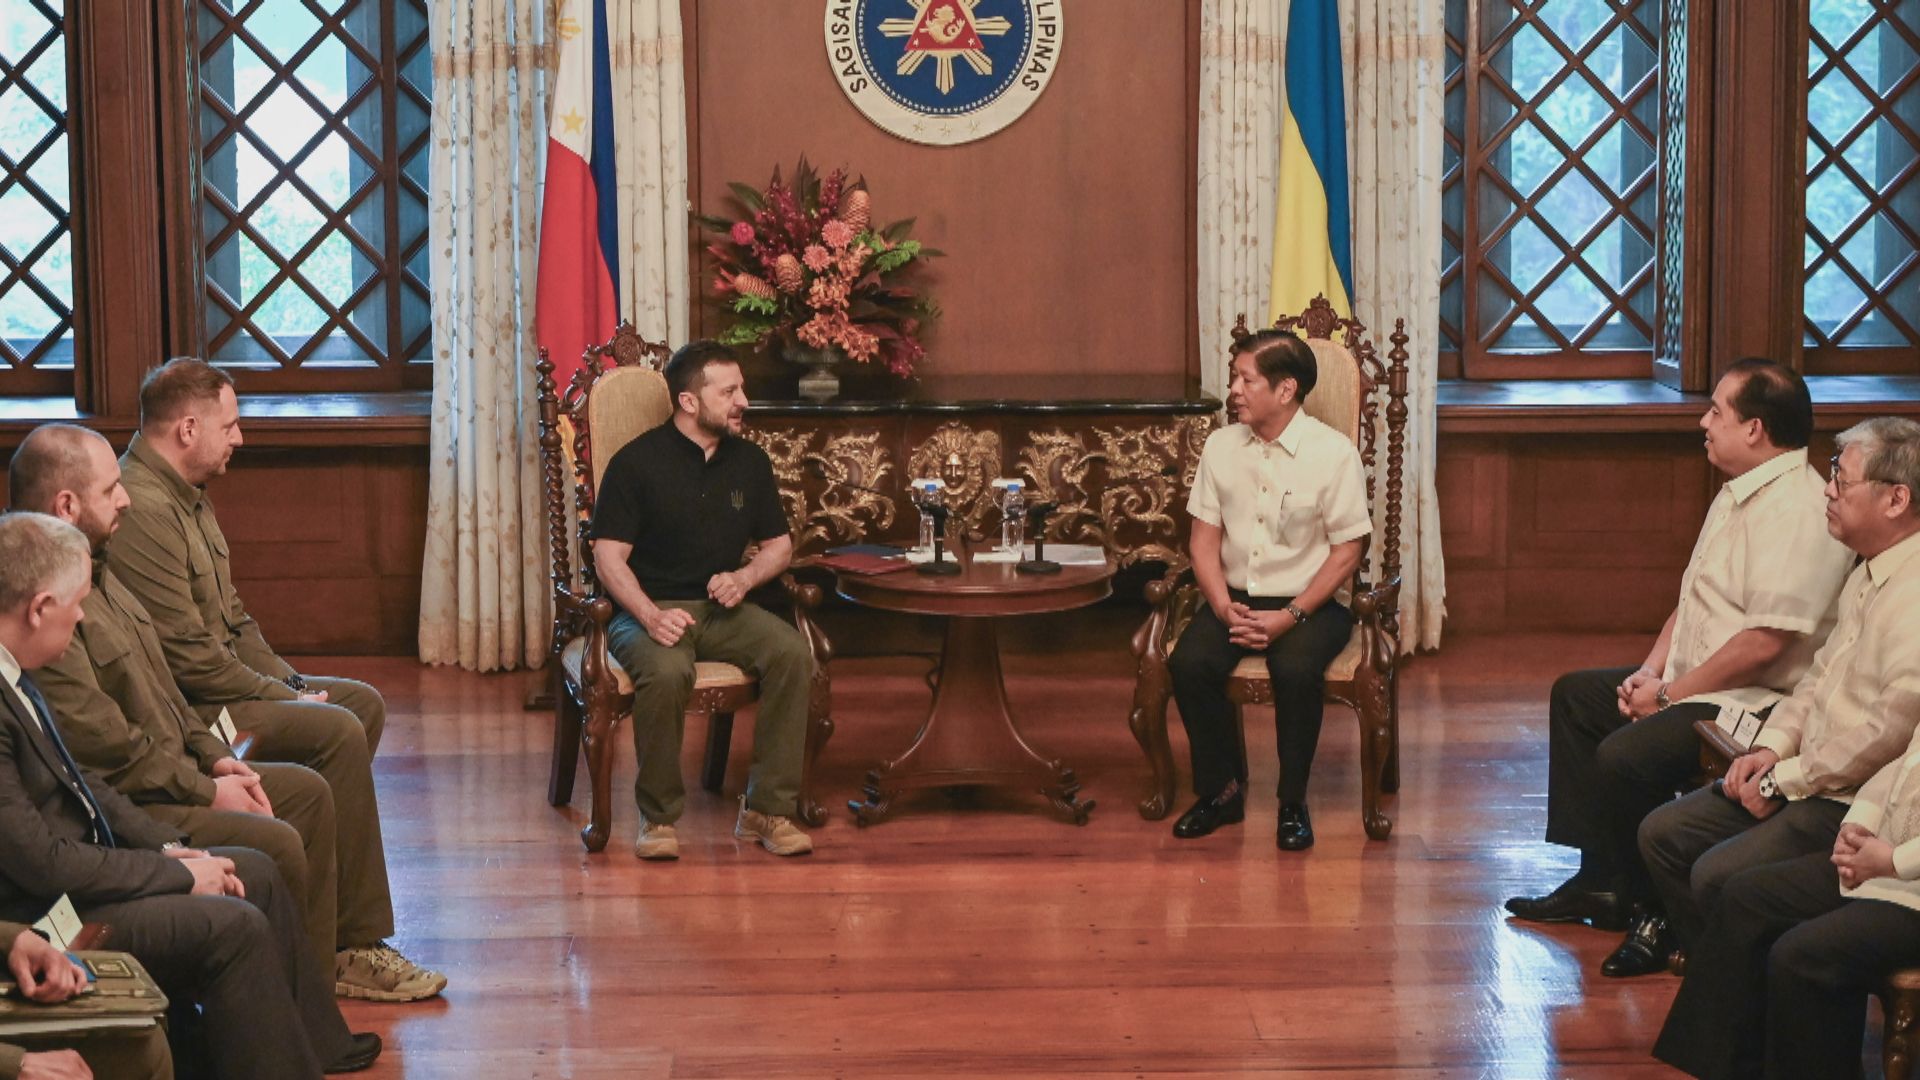 澤連斯基訪菲律賓晤小馬可斯 宣布今年內設烏大使館